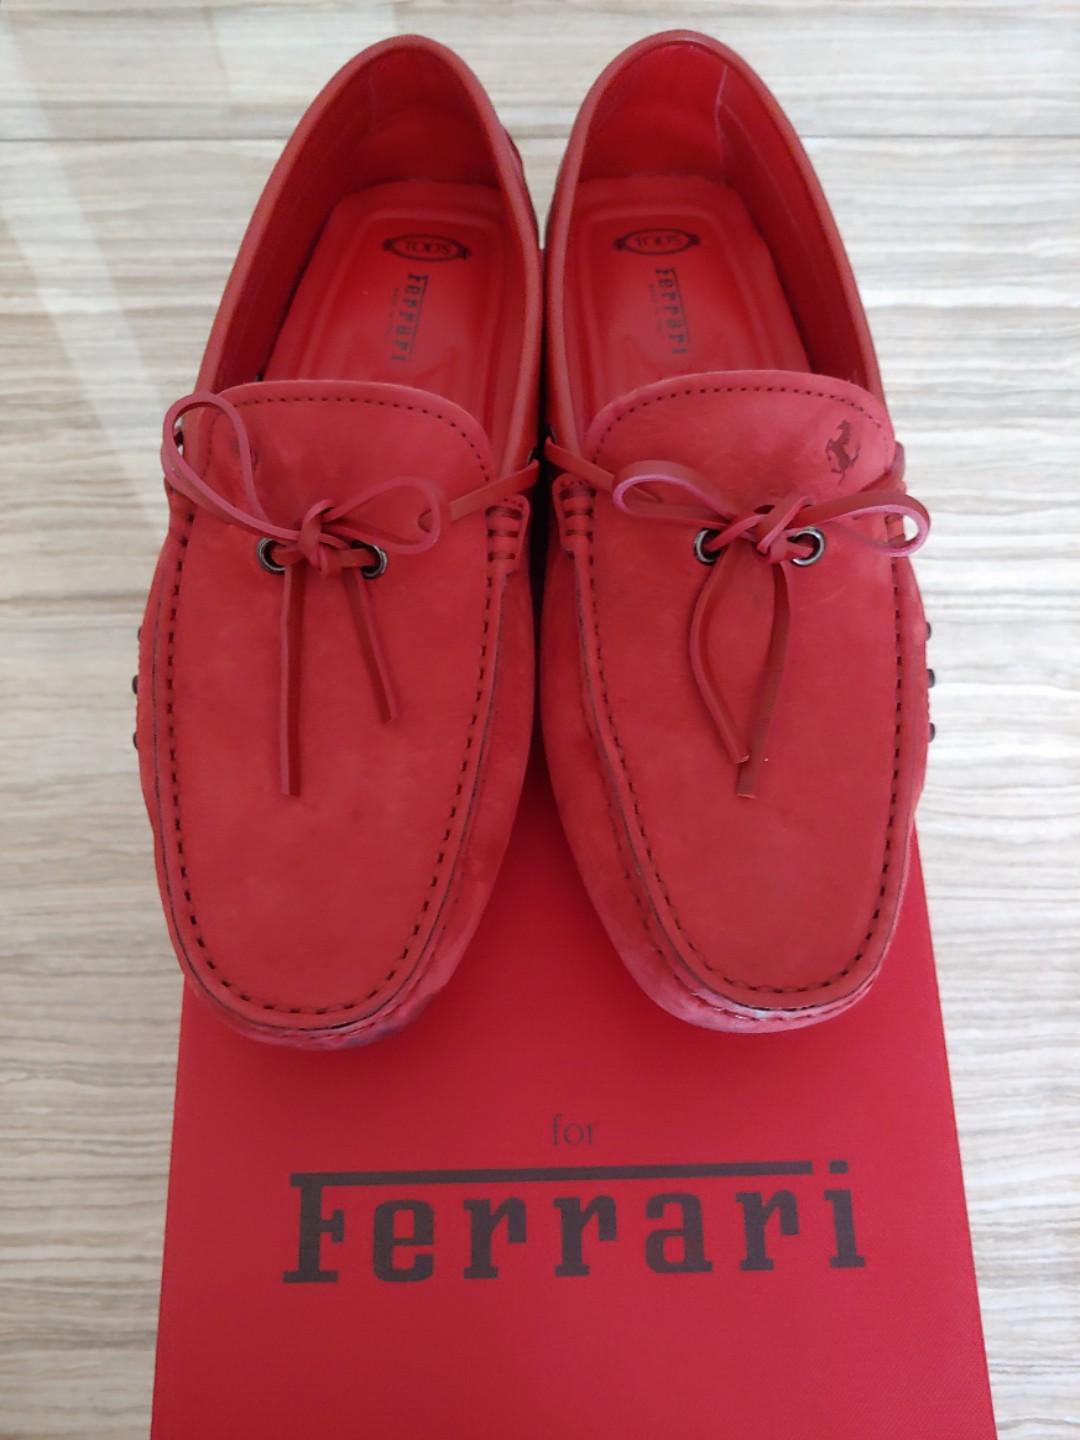 Tod's Ferrari Men Loafers Shoes CNY, Men's Fashion, Footwear, Dress ...